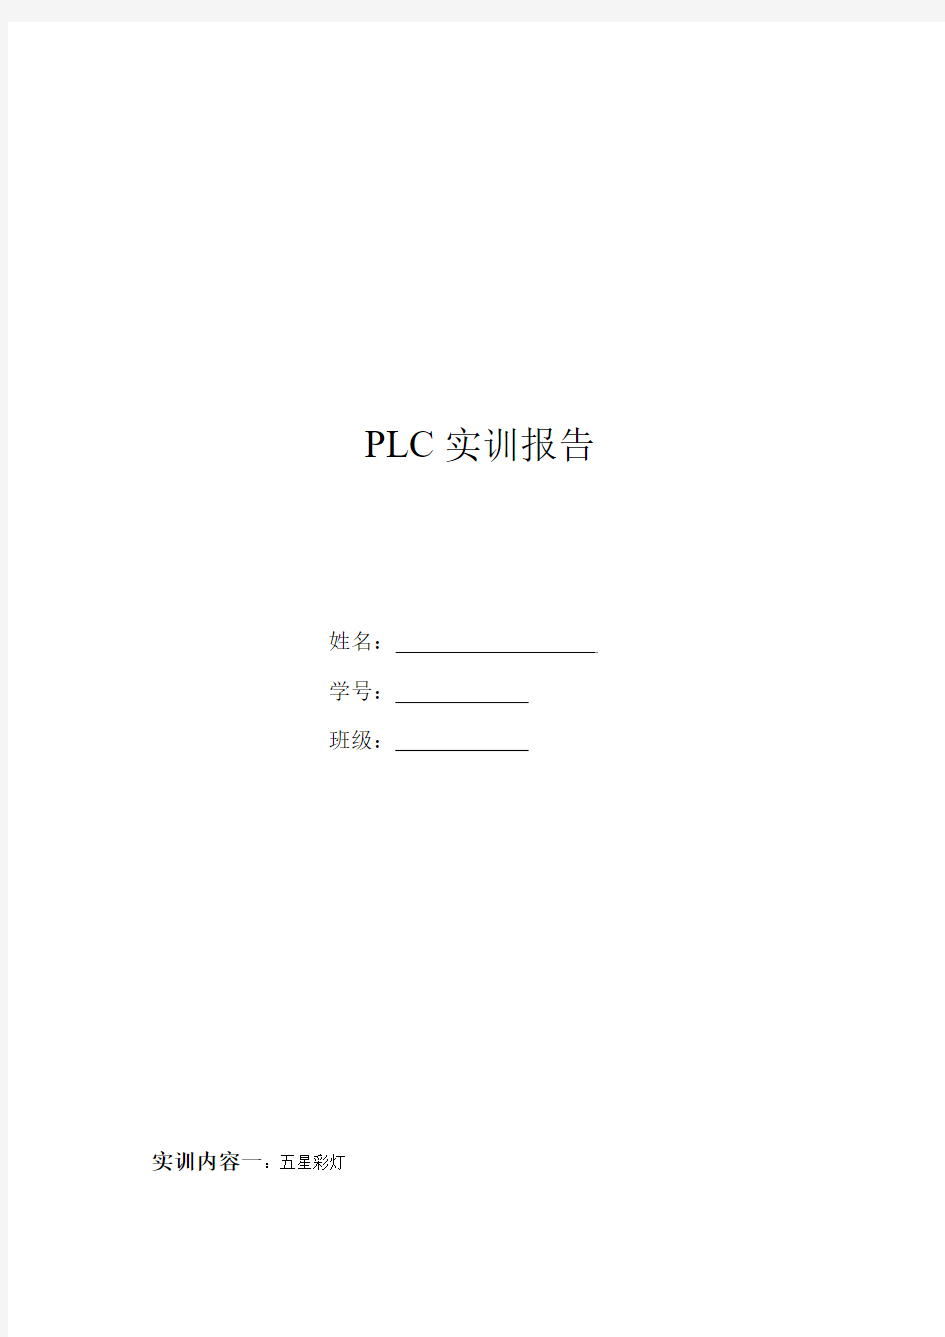 PLC实验报告 上海新奥拓 共8个实验